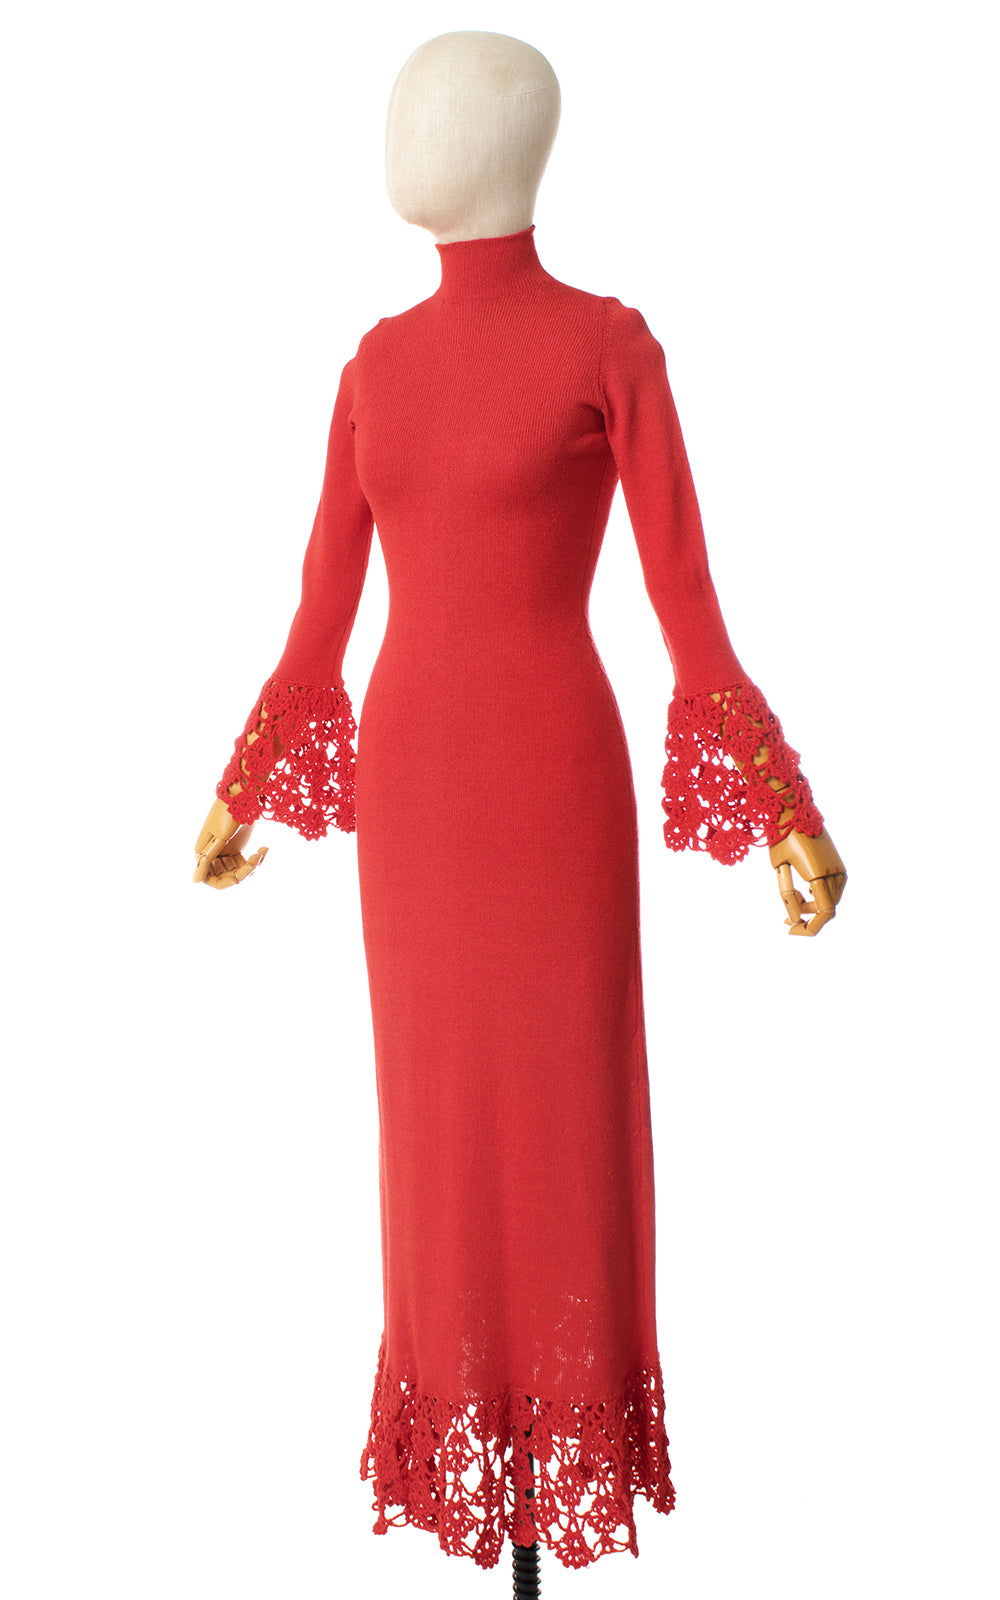 1960s Made Gerrard Knit Maxi Dress